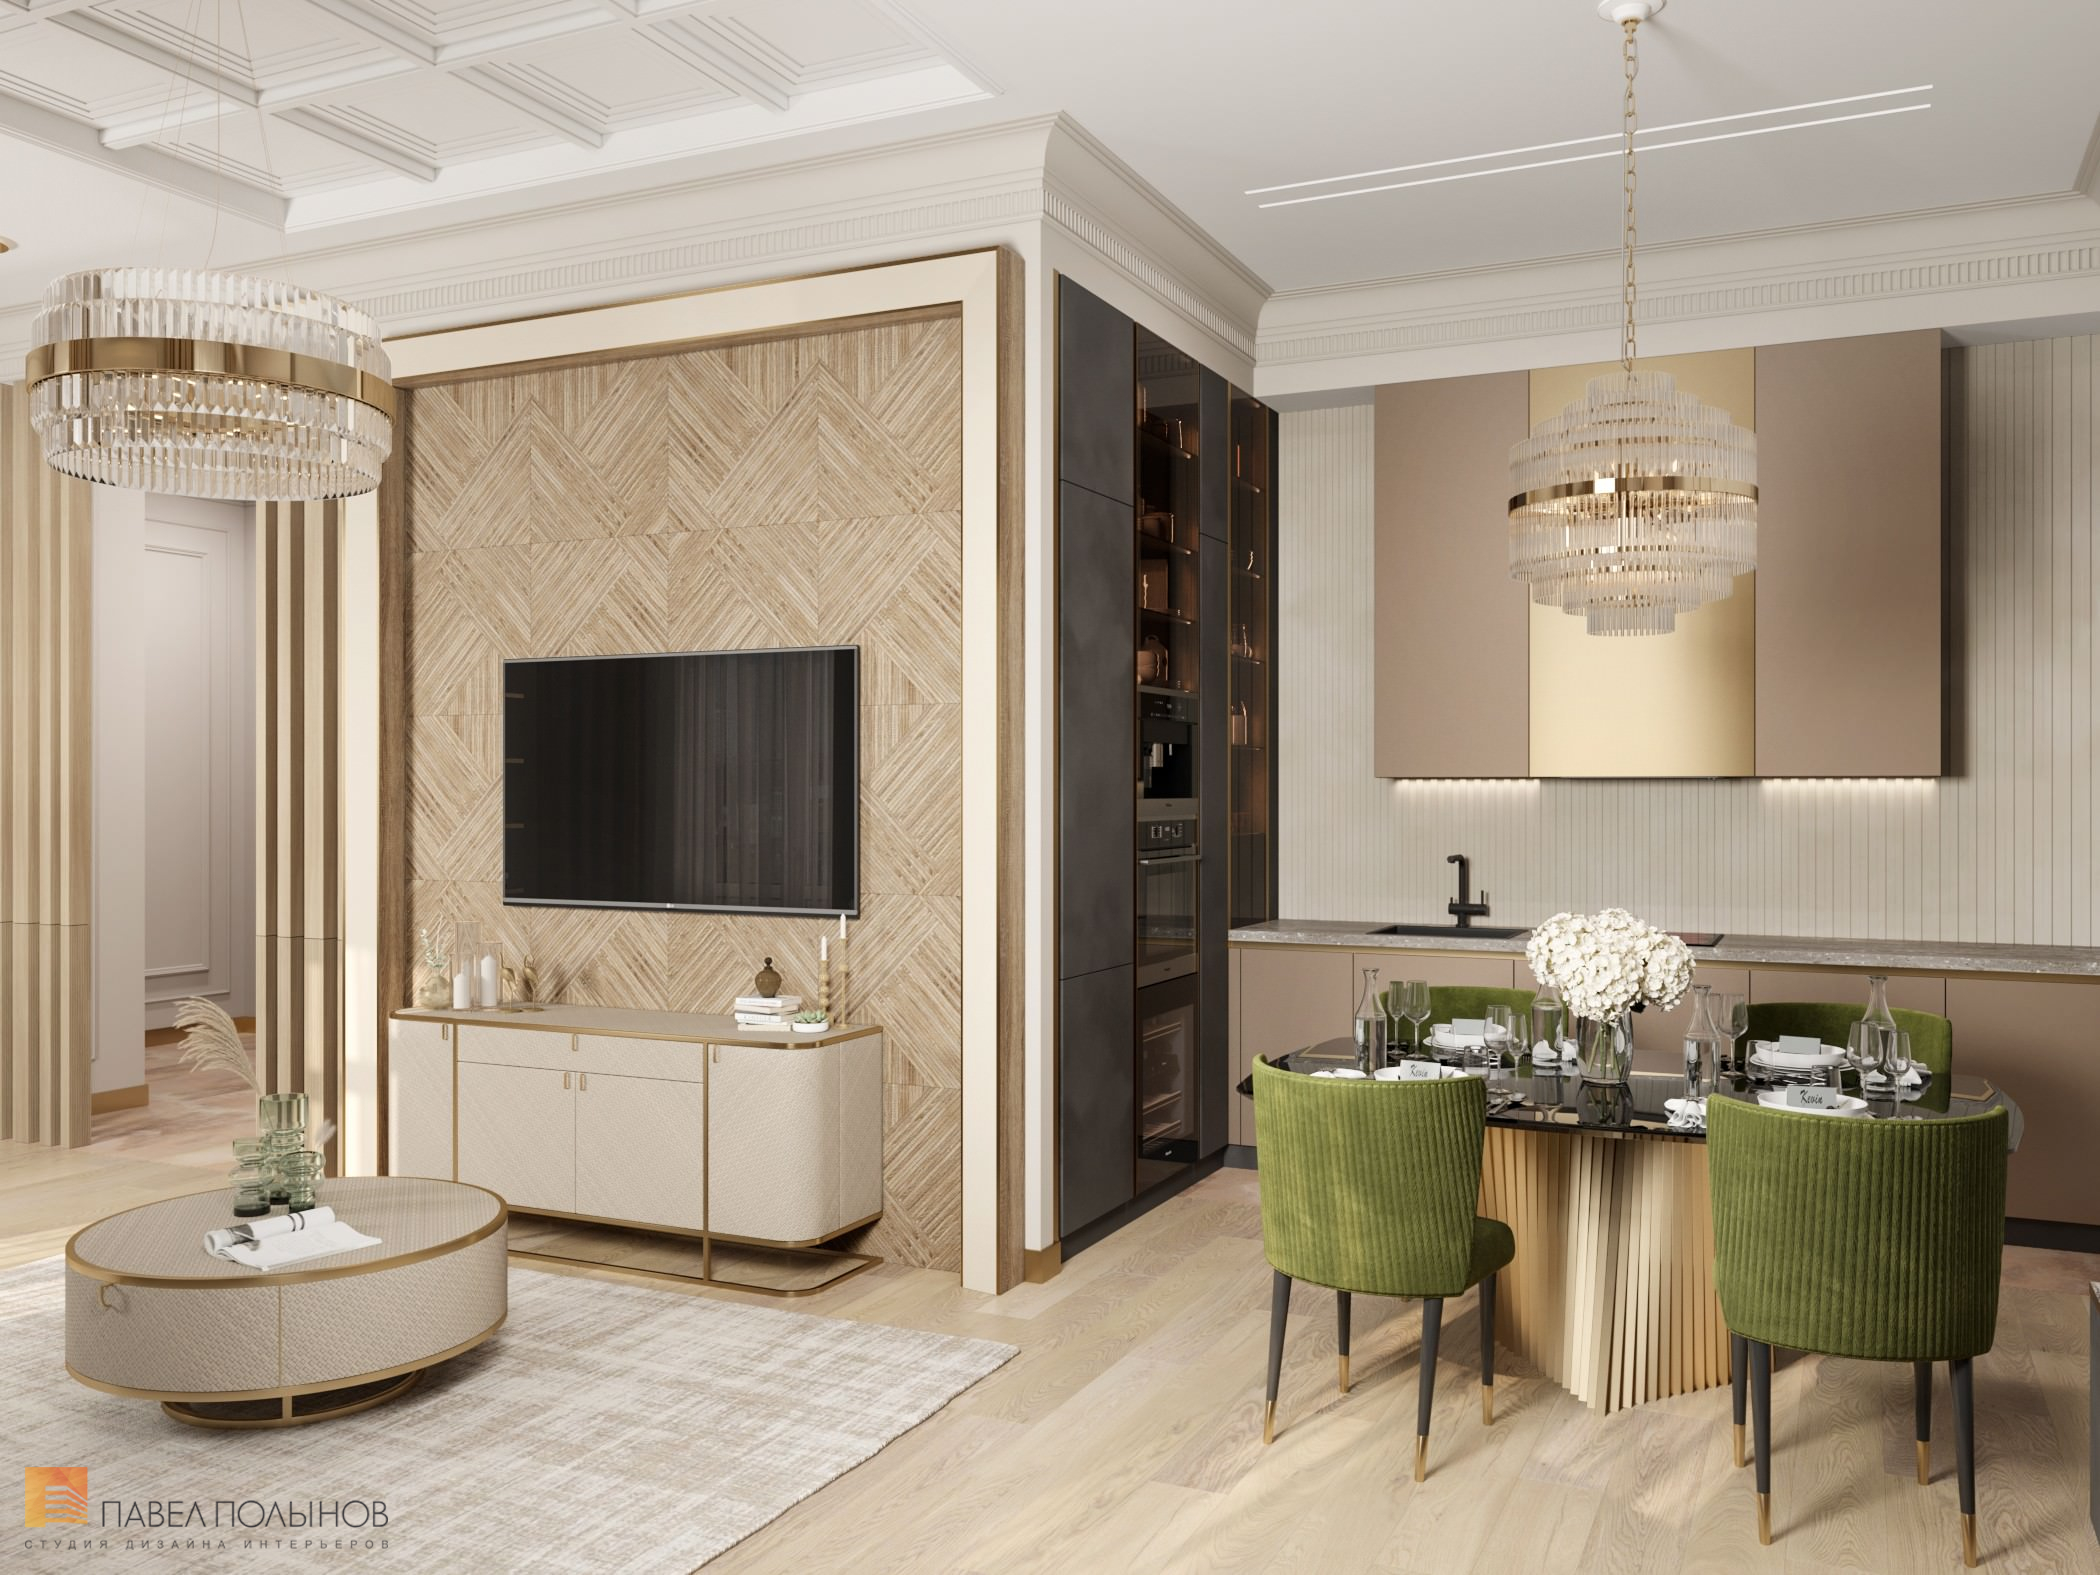 Фото дизайн кухни-гостиной из проекта «Дизайн интерьера квартиры в стиле Ар-деко, 100 кв.м.»